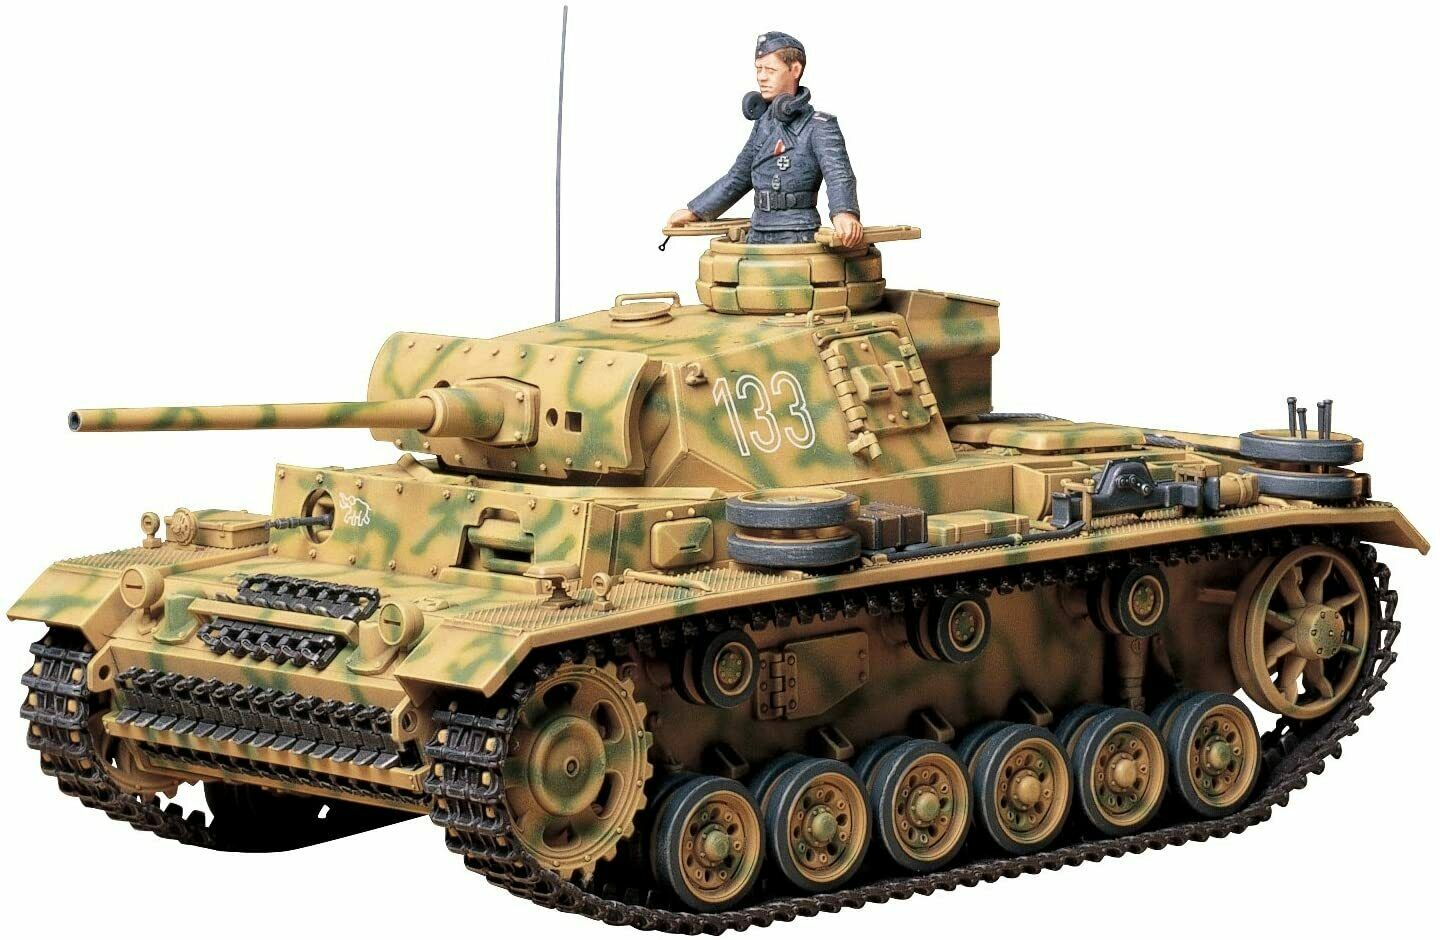 35215 Tamiya German Pz. Kpfw. Iii Ausf. L 1/35th Plastic Kit 1/35 Military Tank